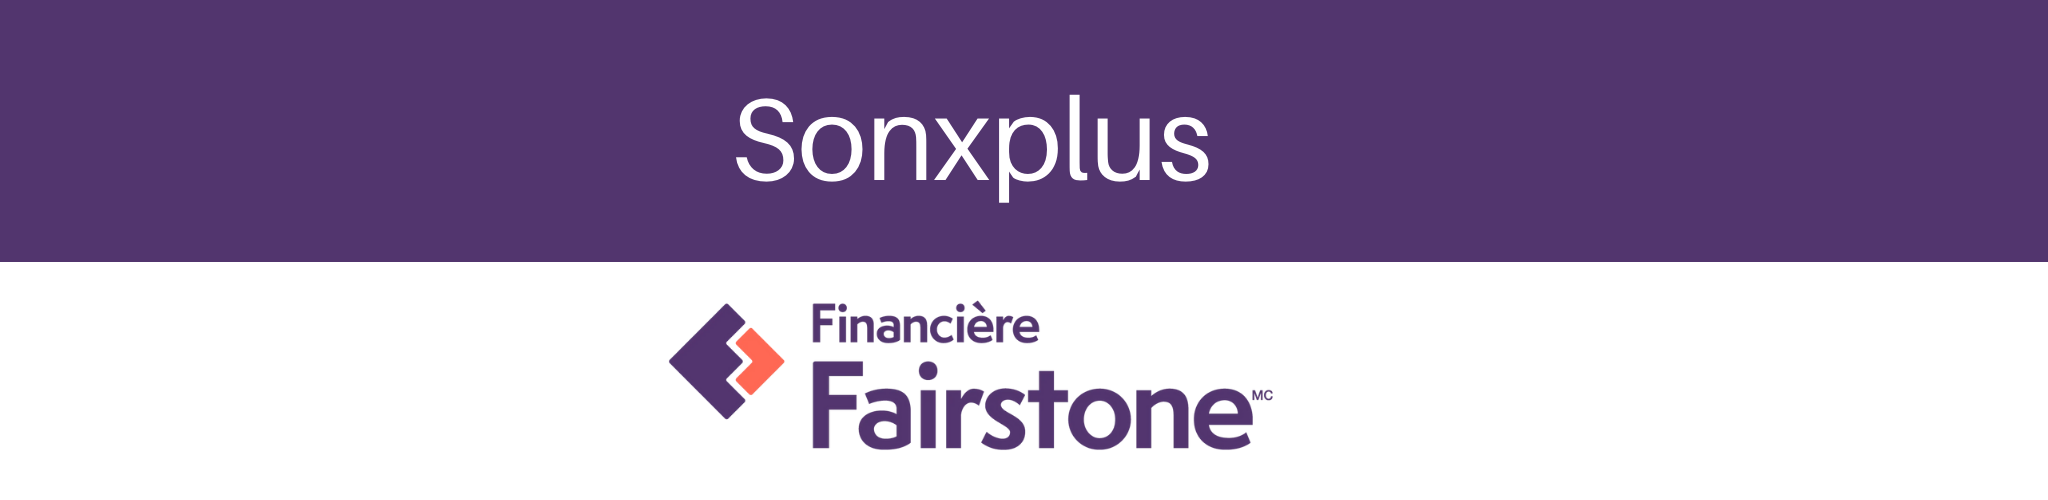 Financement Financière Fairstone achats électroniques | Sonxplus Chambly